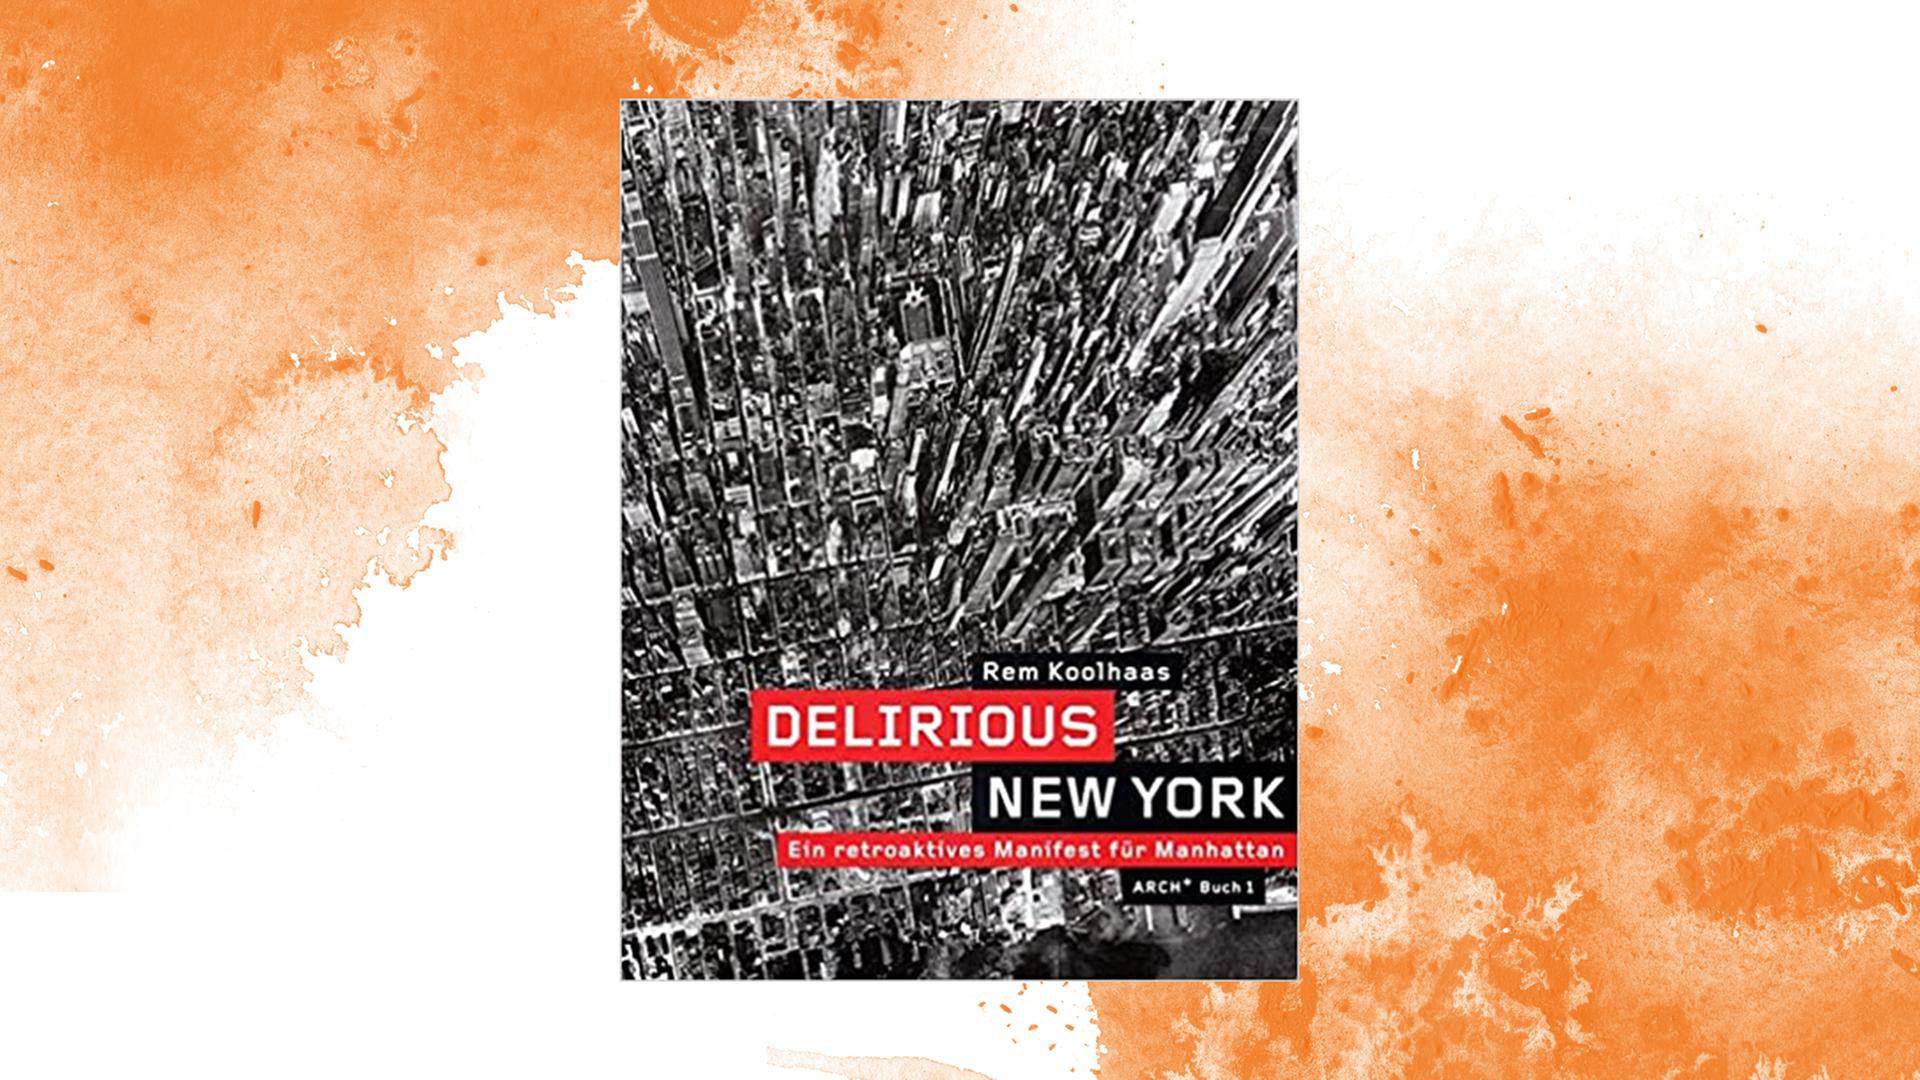 Das Buchcover von Rem Kohlhaas: "Delirious New York - Ein retroaktives Manifest für Manhattan", arch+, 2006.